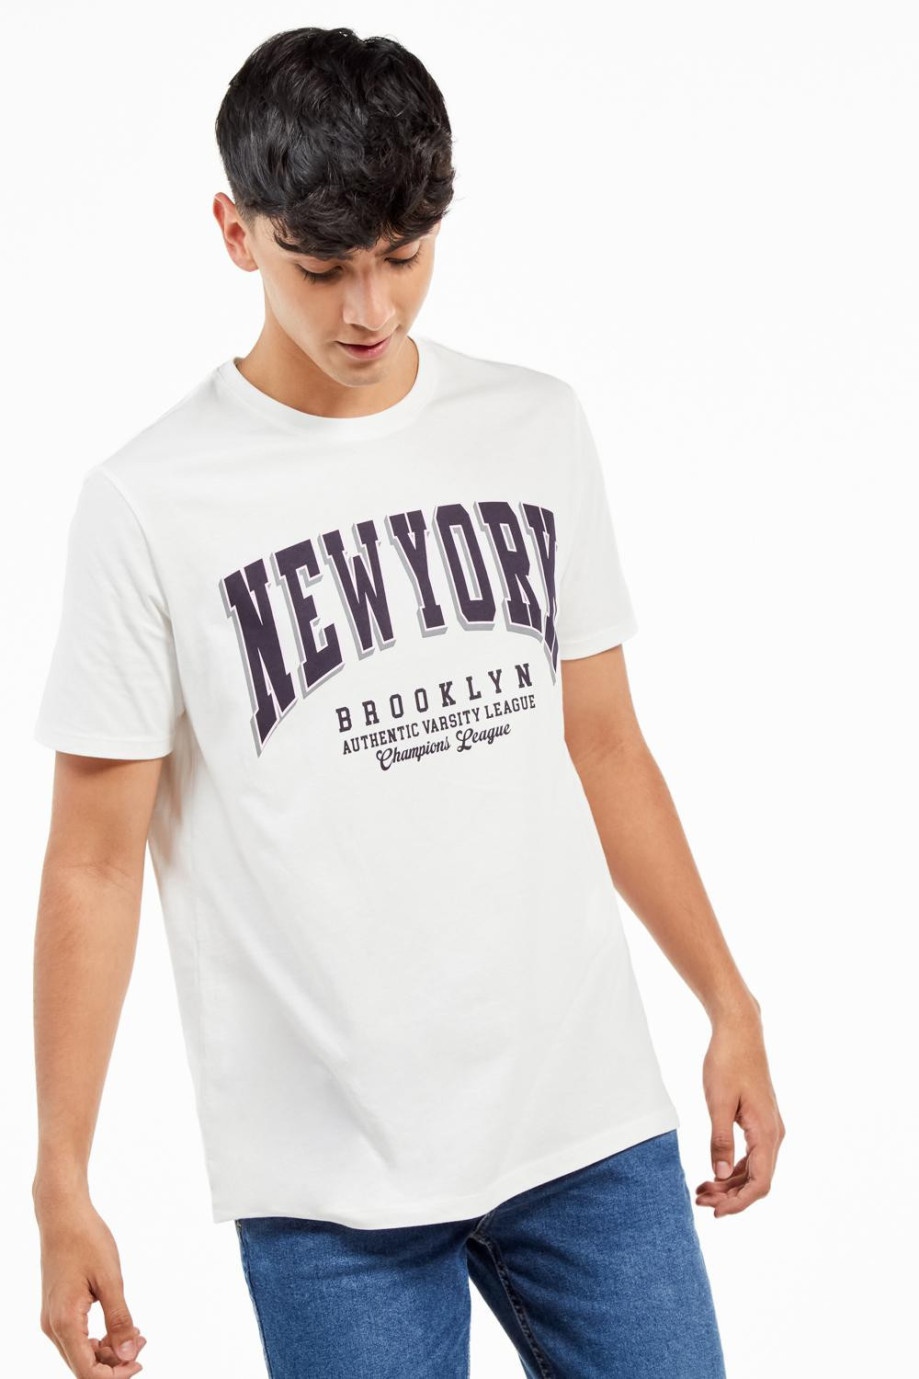 Camiseta unicolor manga corta con diseño college de letras